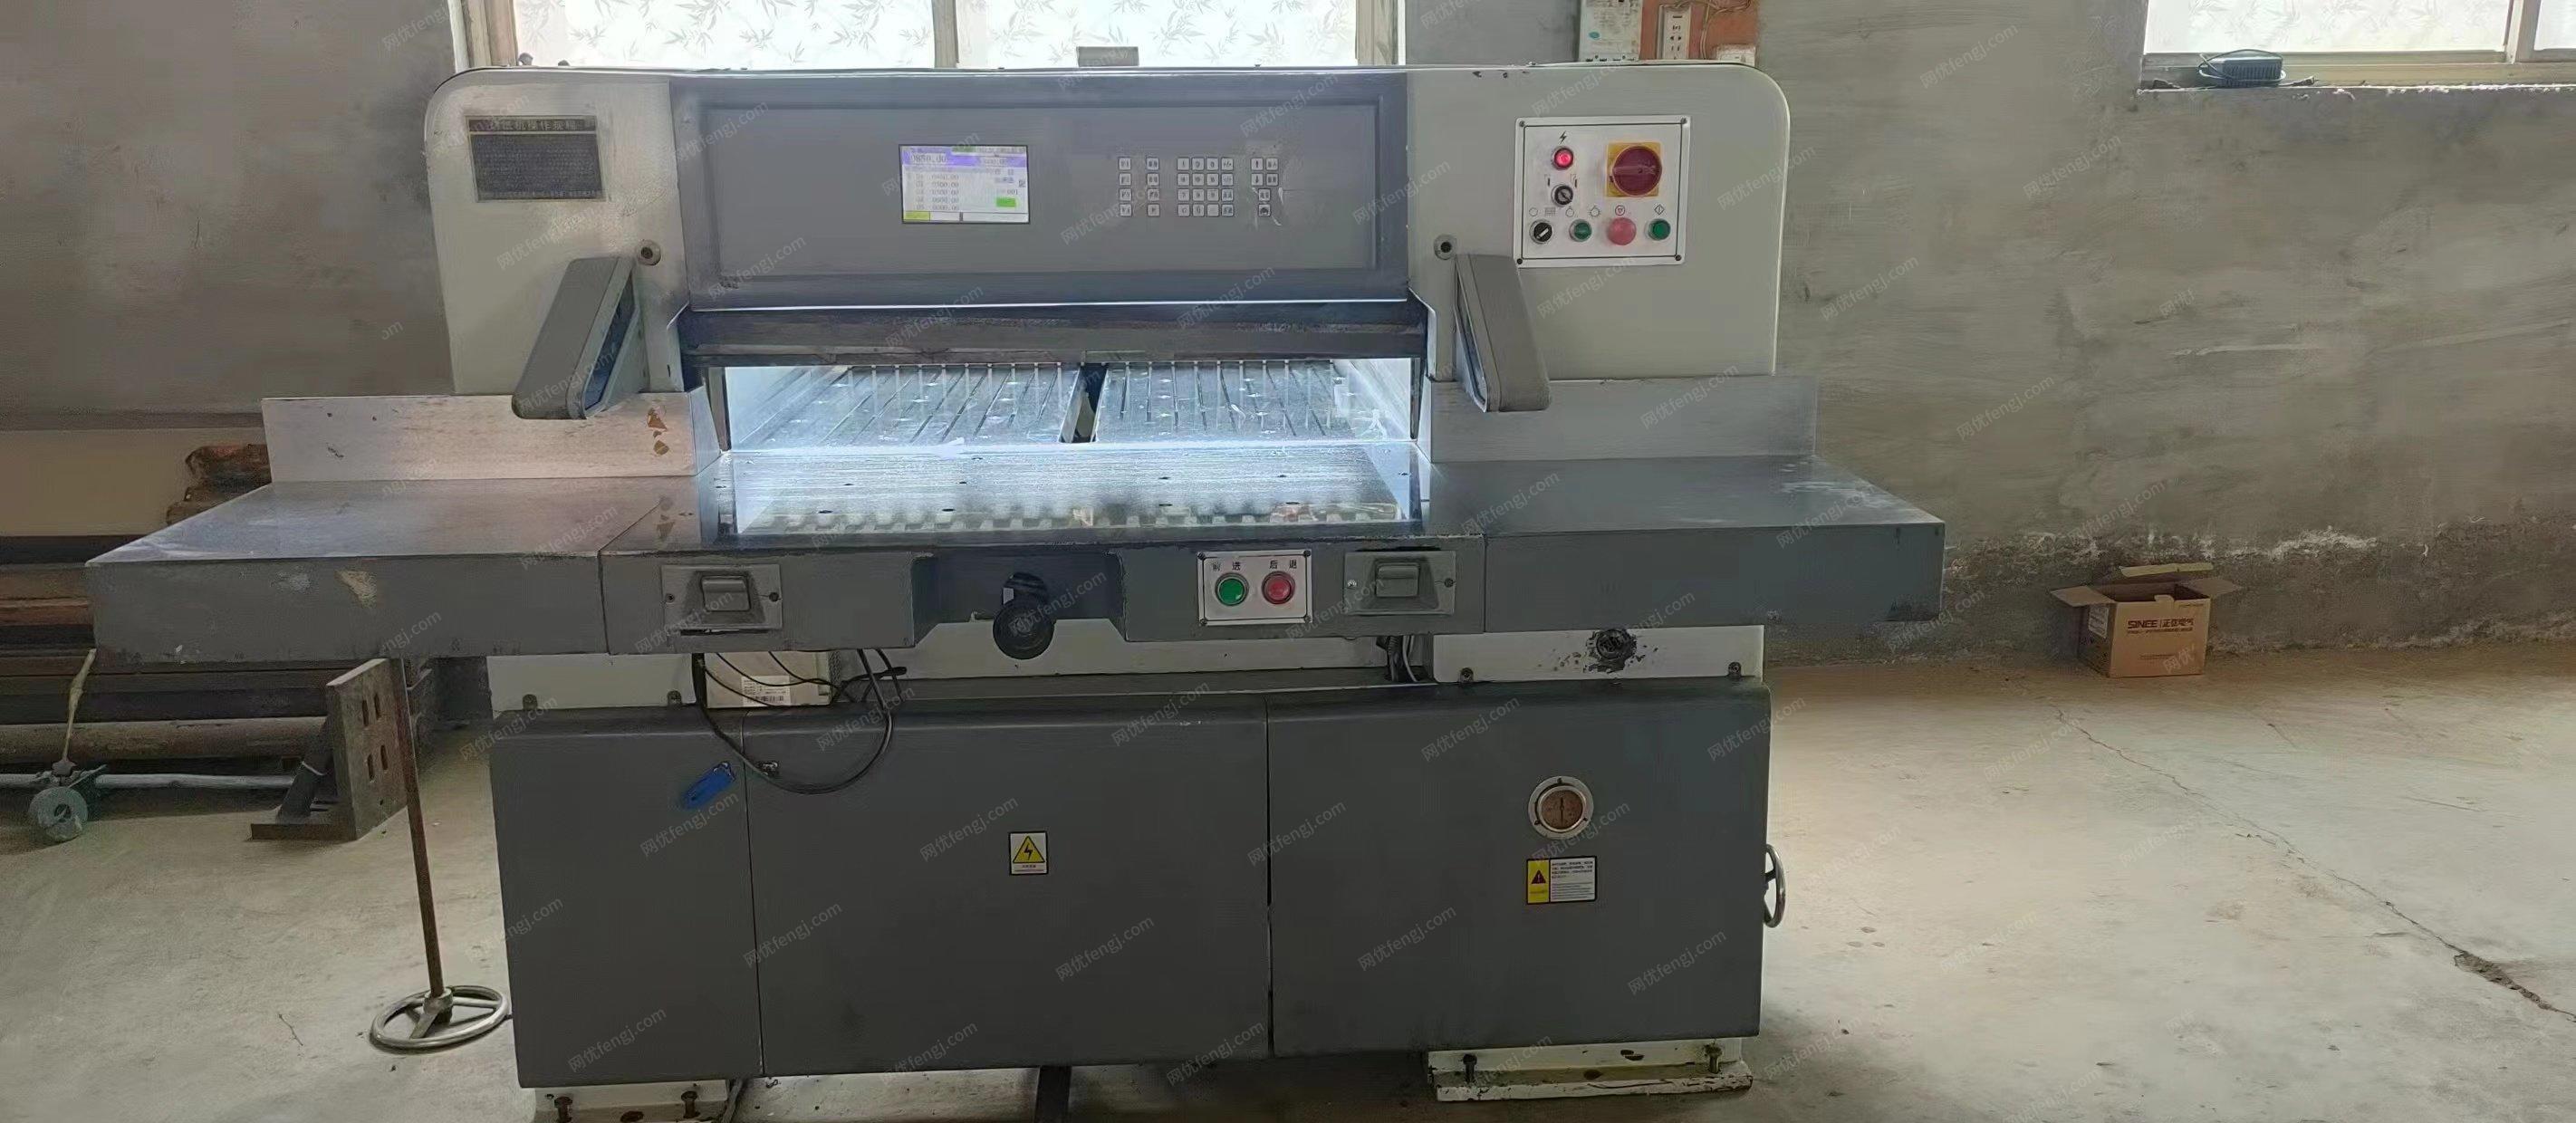 河北沧州出售920型液压程控切纸机